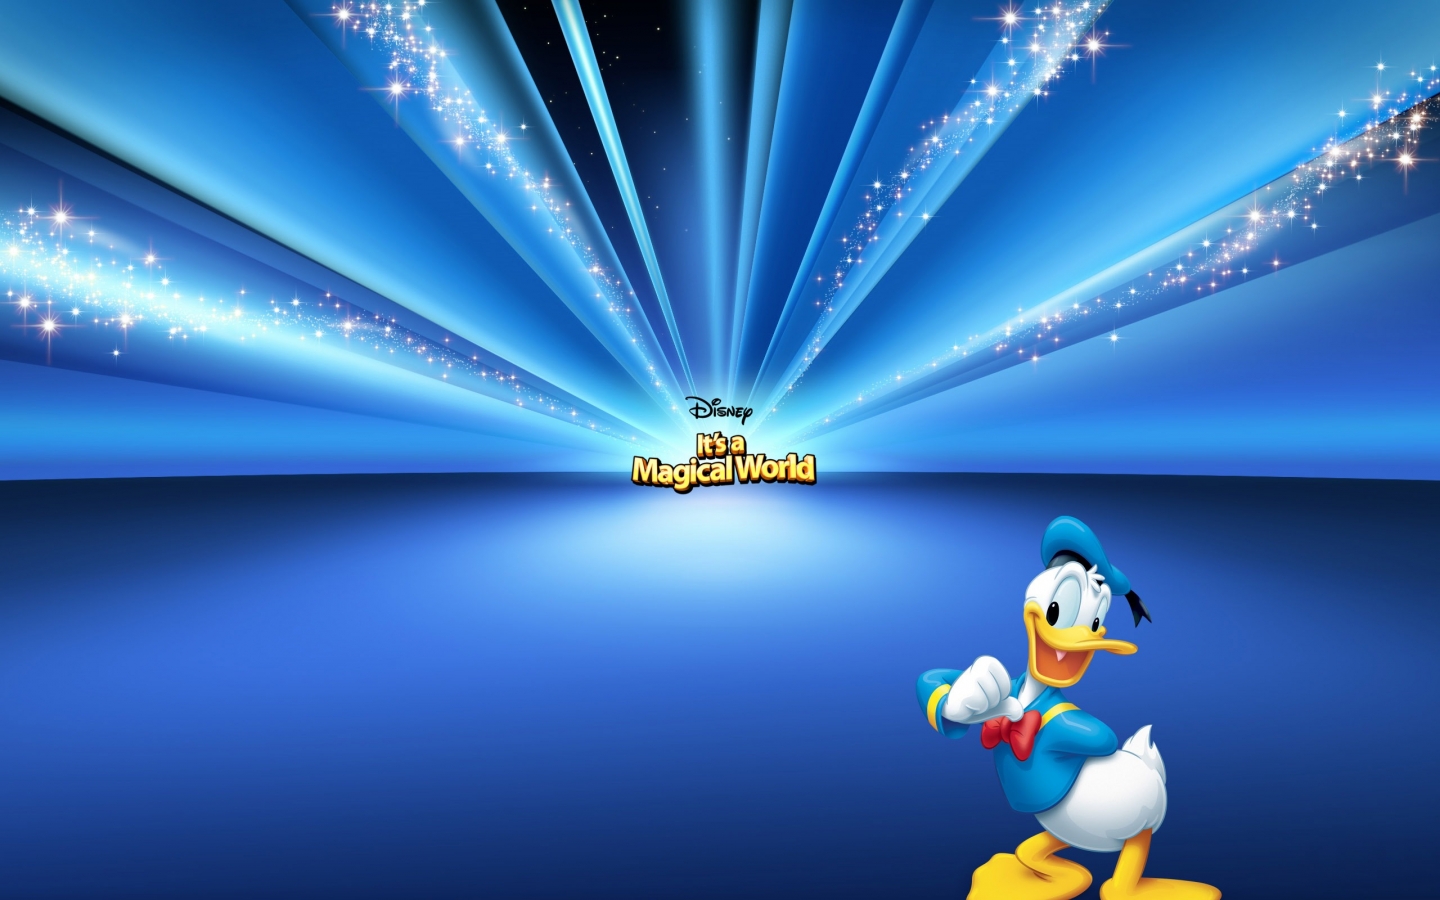 Donald Duck Cartoon for 1440 x 900 widescreen resolution